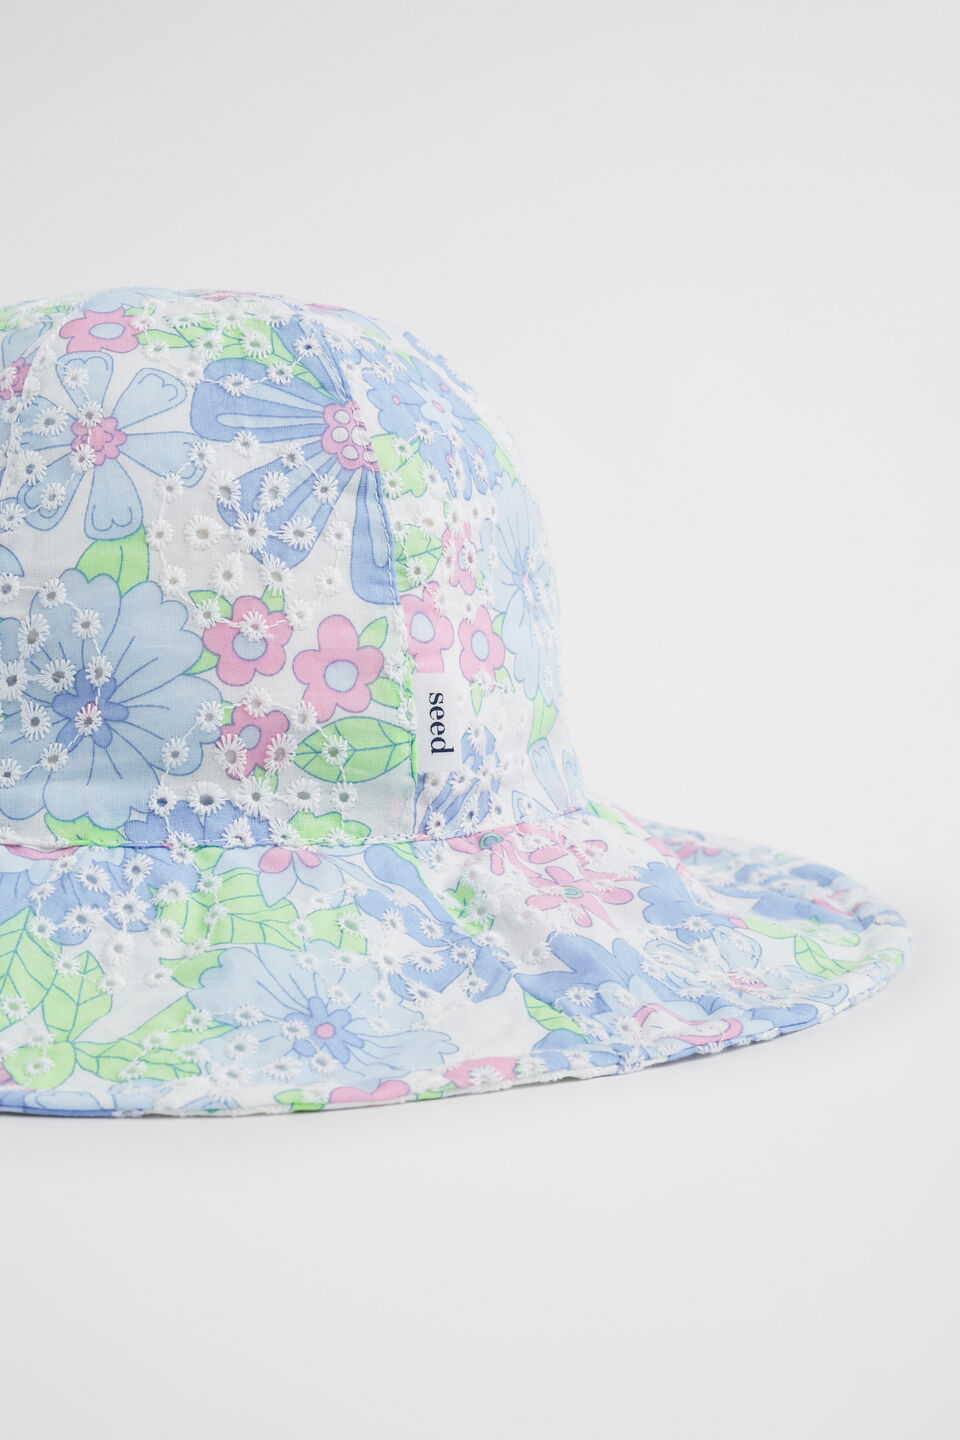 Cutwork Floral Bucket Hat  Multi